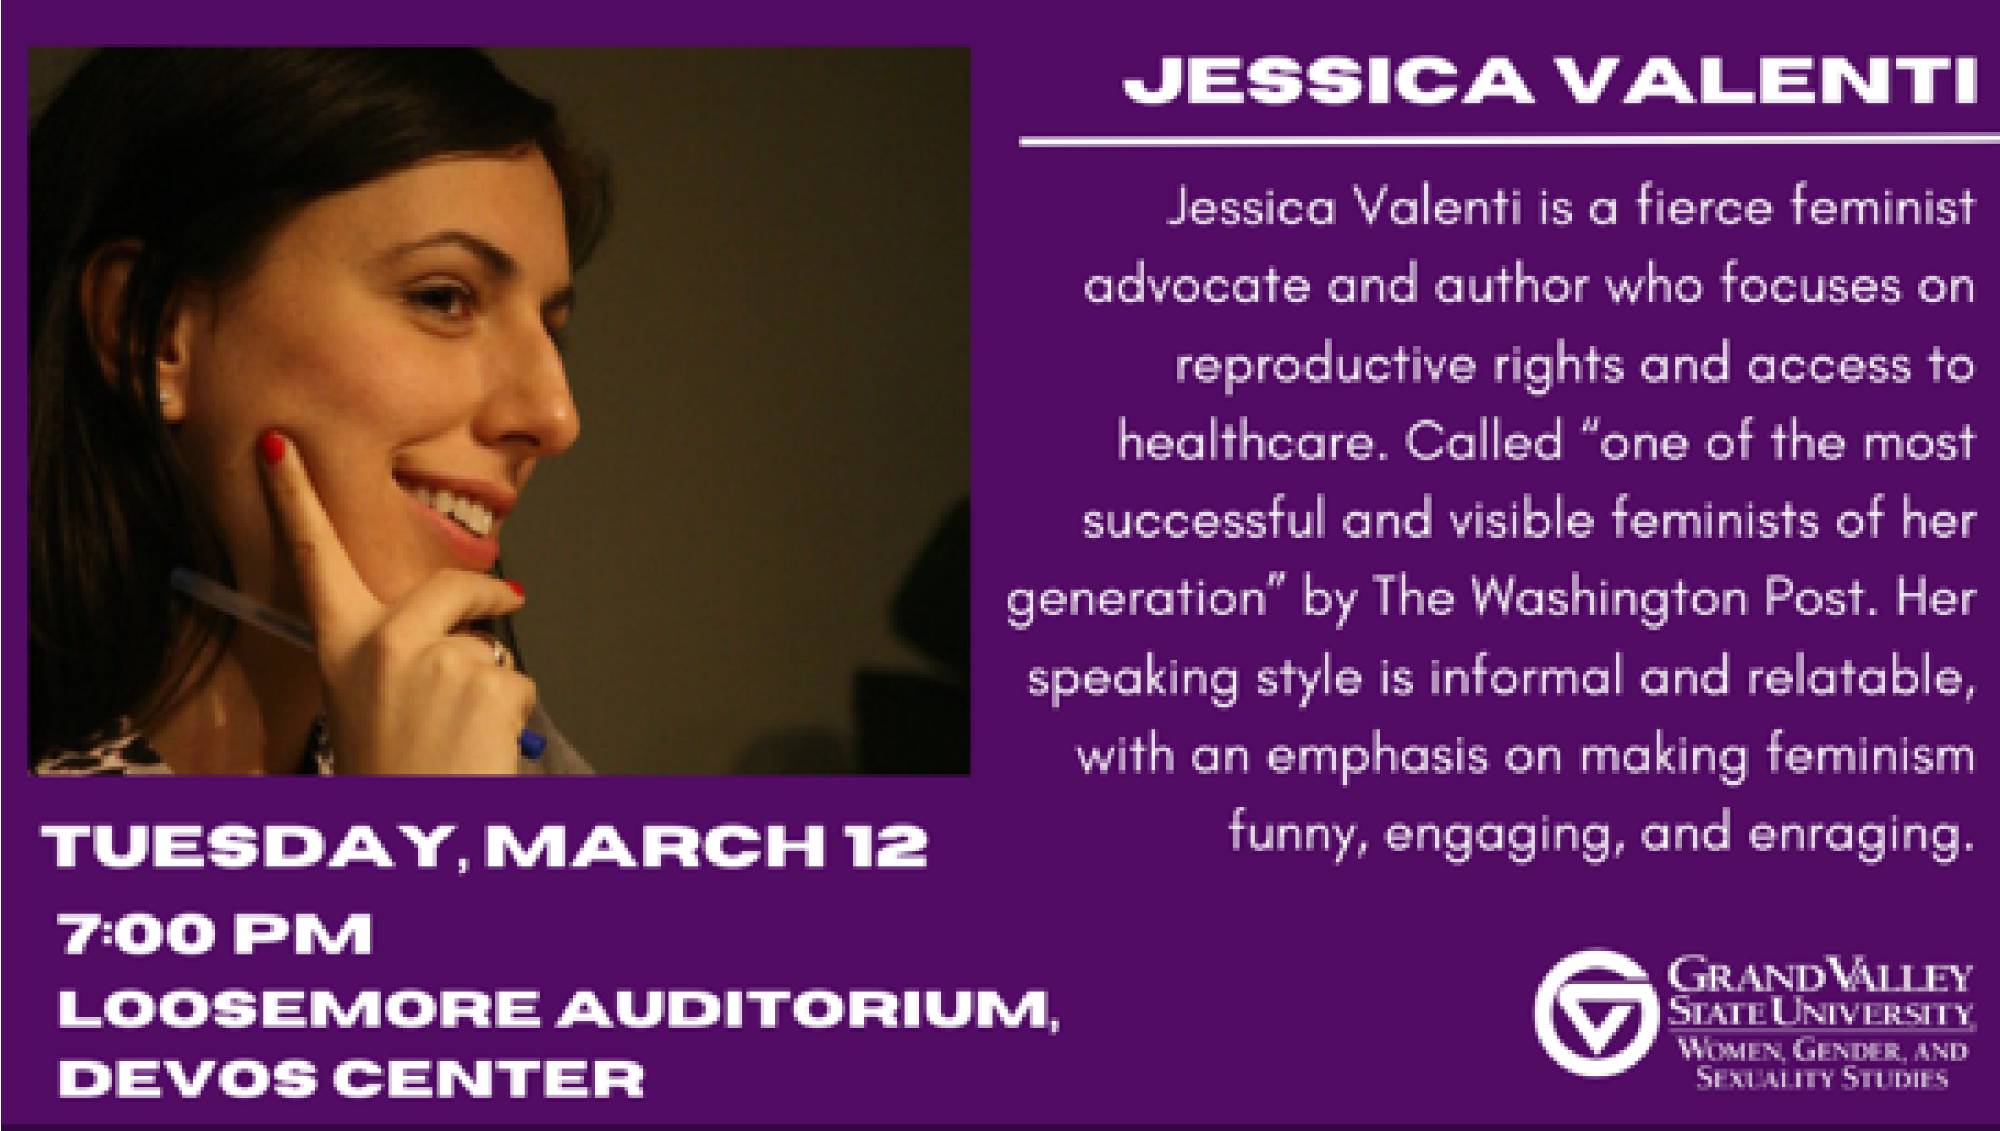 Jessica Valenti Event - March 12th